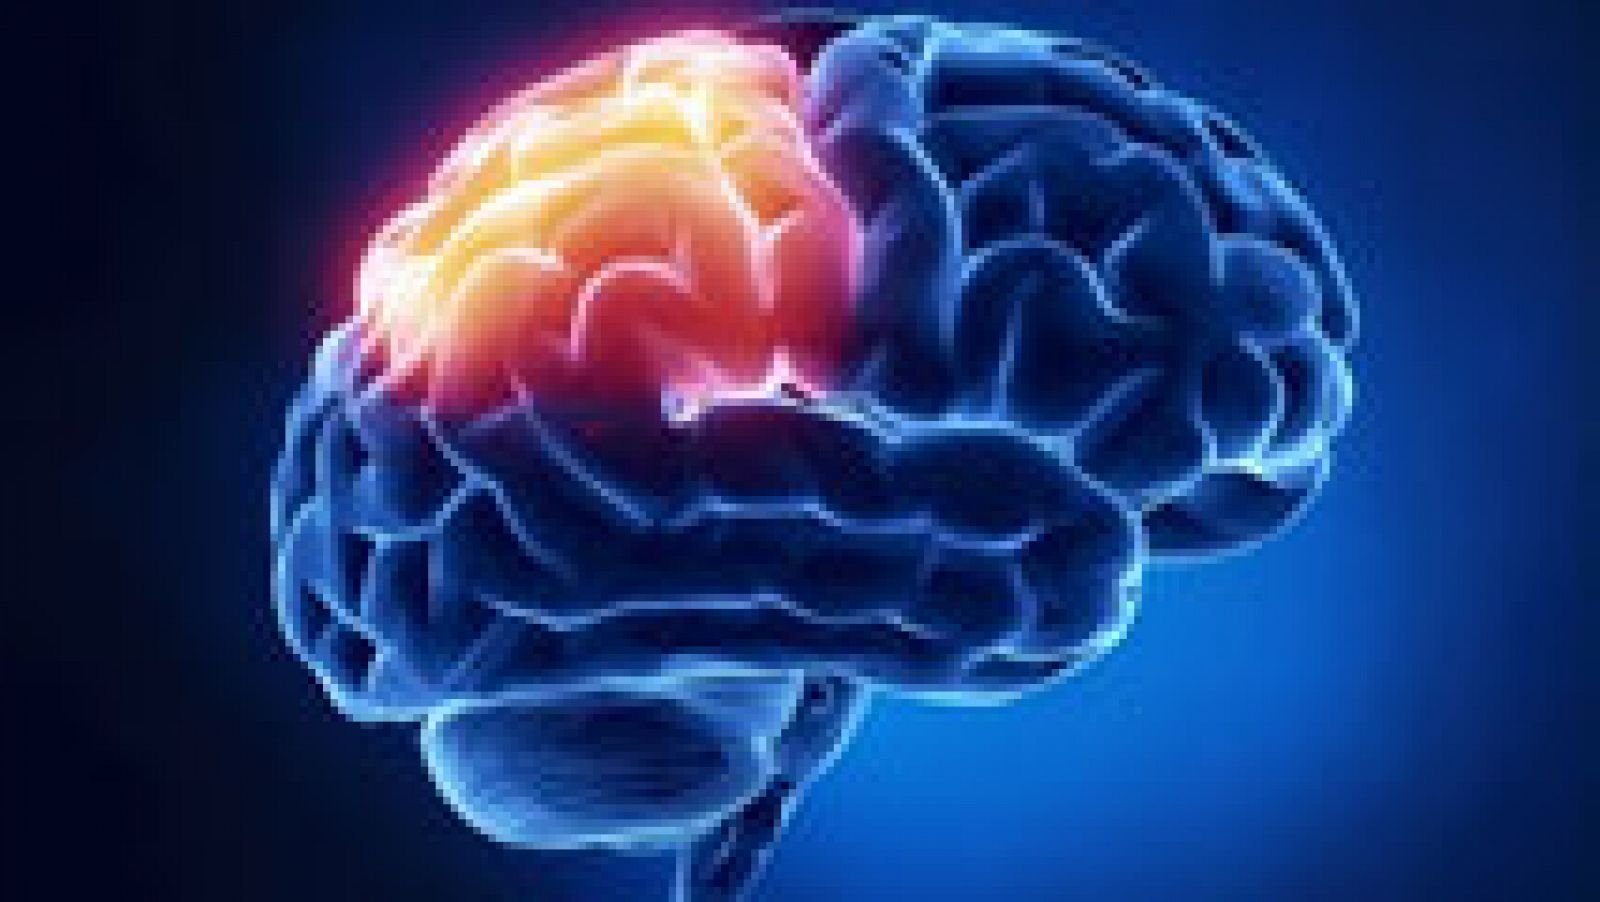 Saber Vivir - Miscelánea de enfermedades - Ictus cerebral 